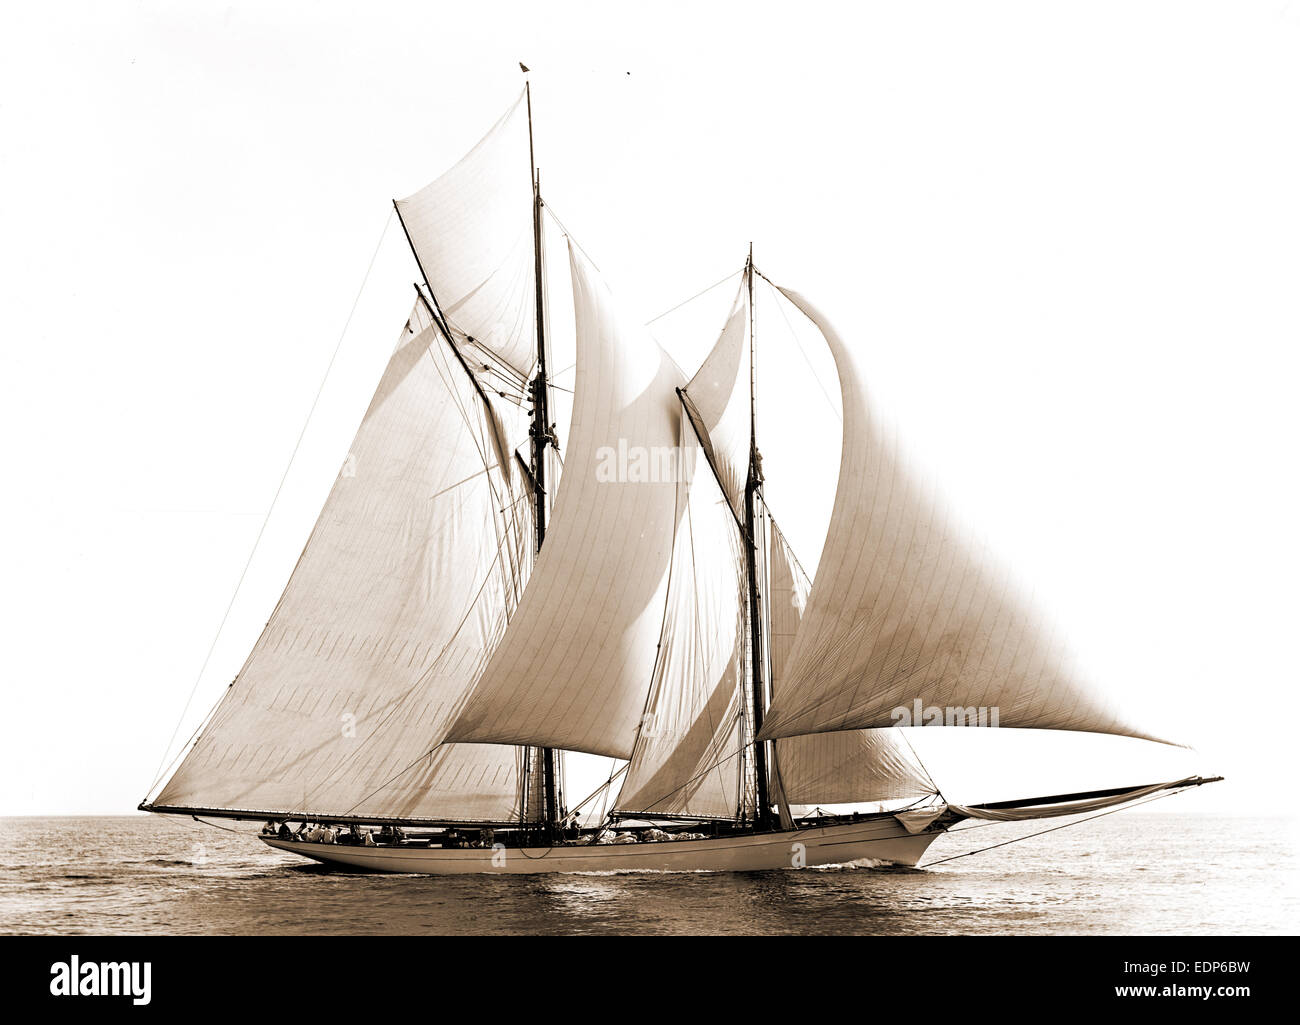 Merlin, Merlin (goélette), Commodore Gerry Cup, régates, yachts, 1892 Banque D'Images